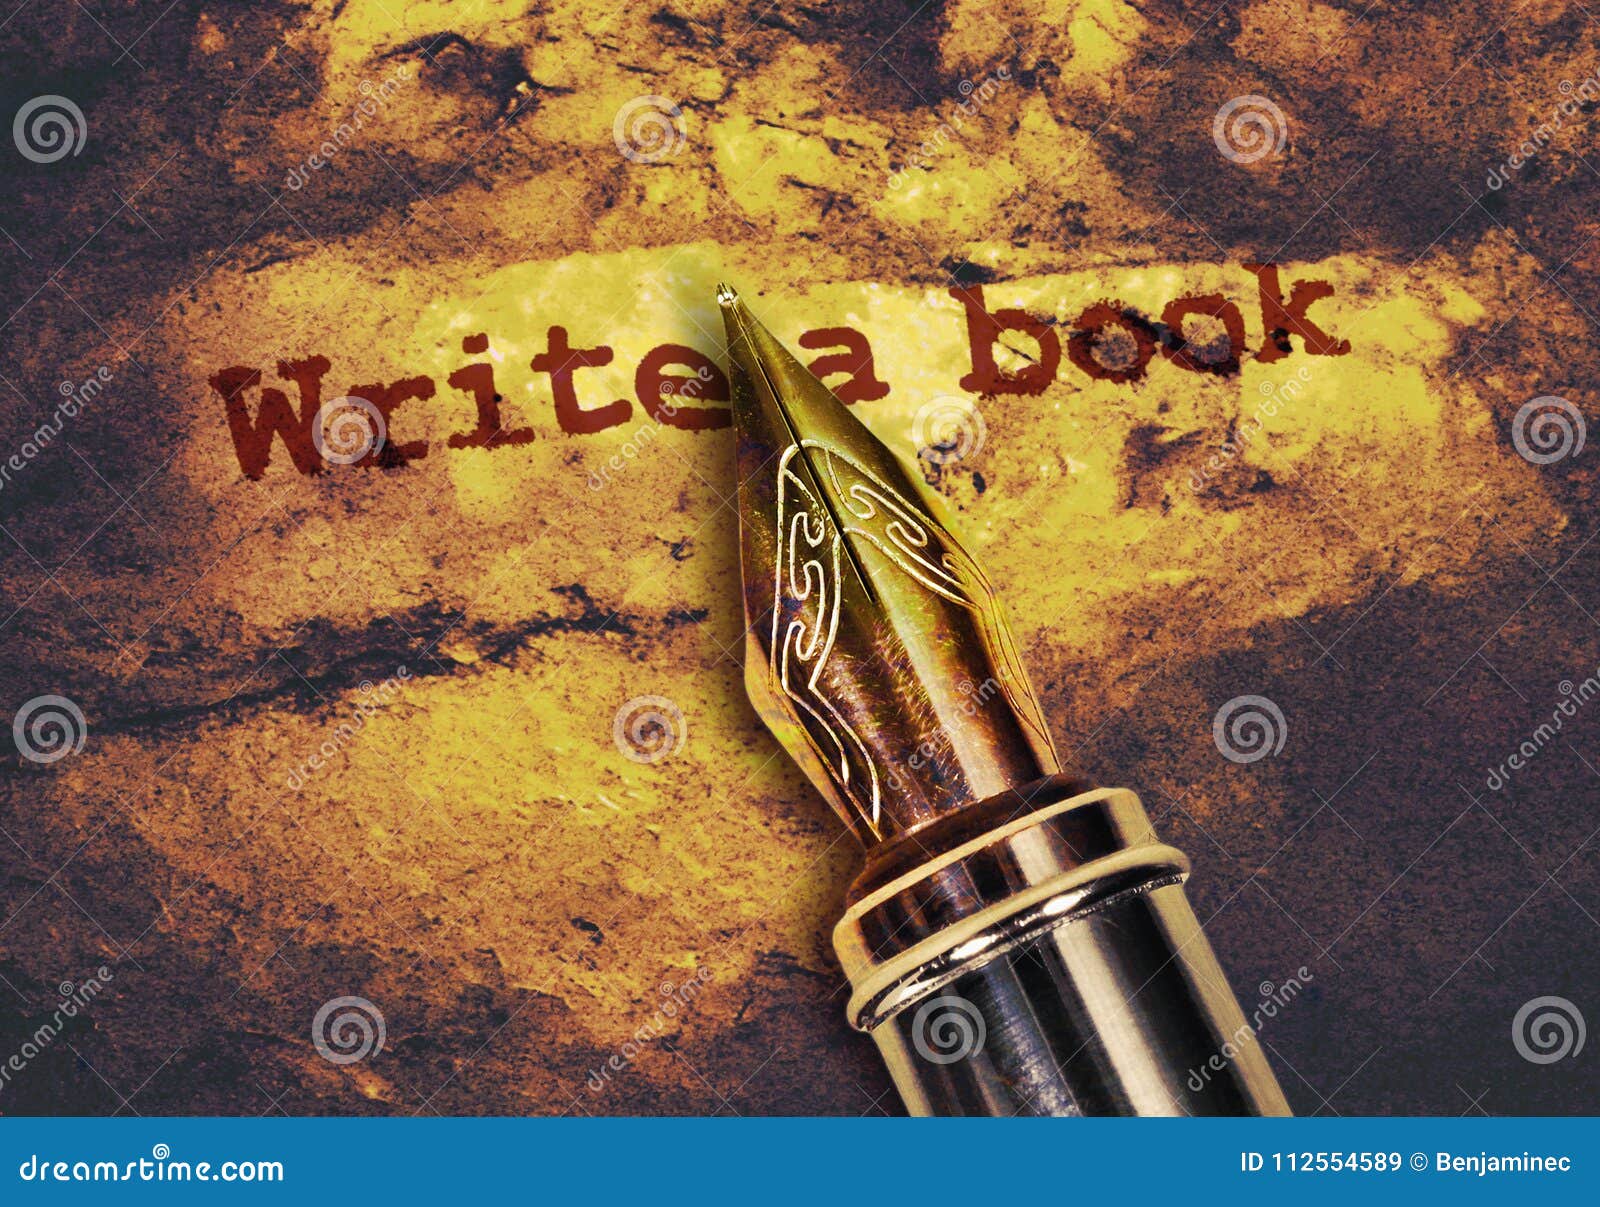 write a book